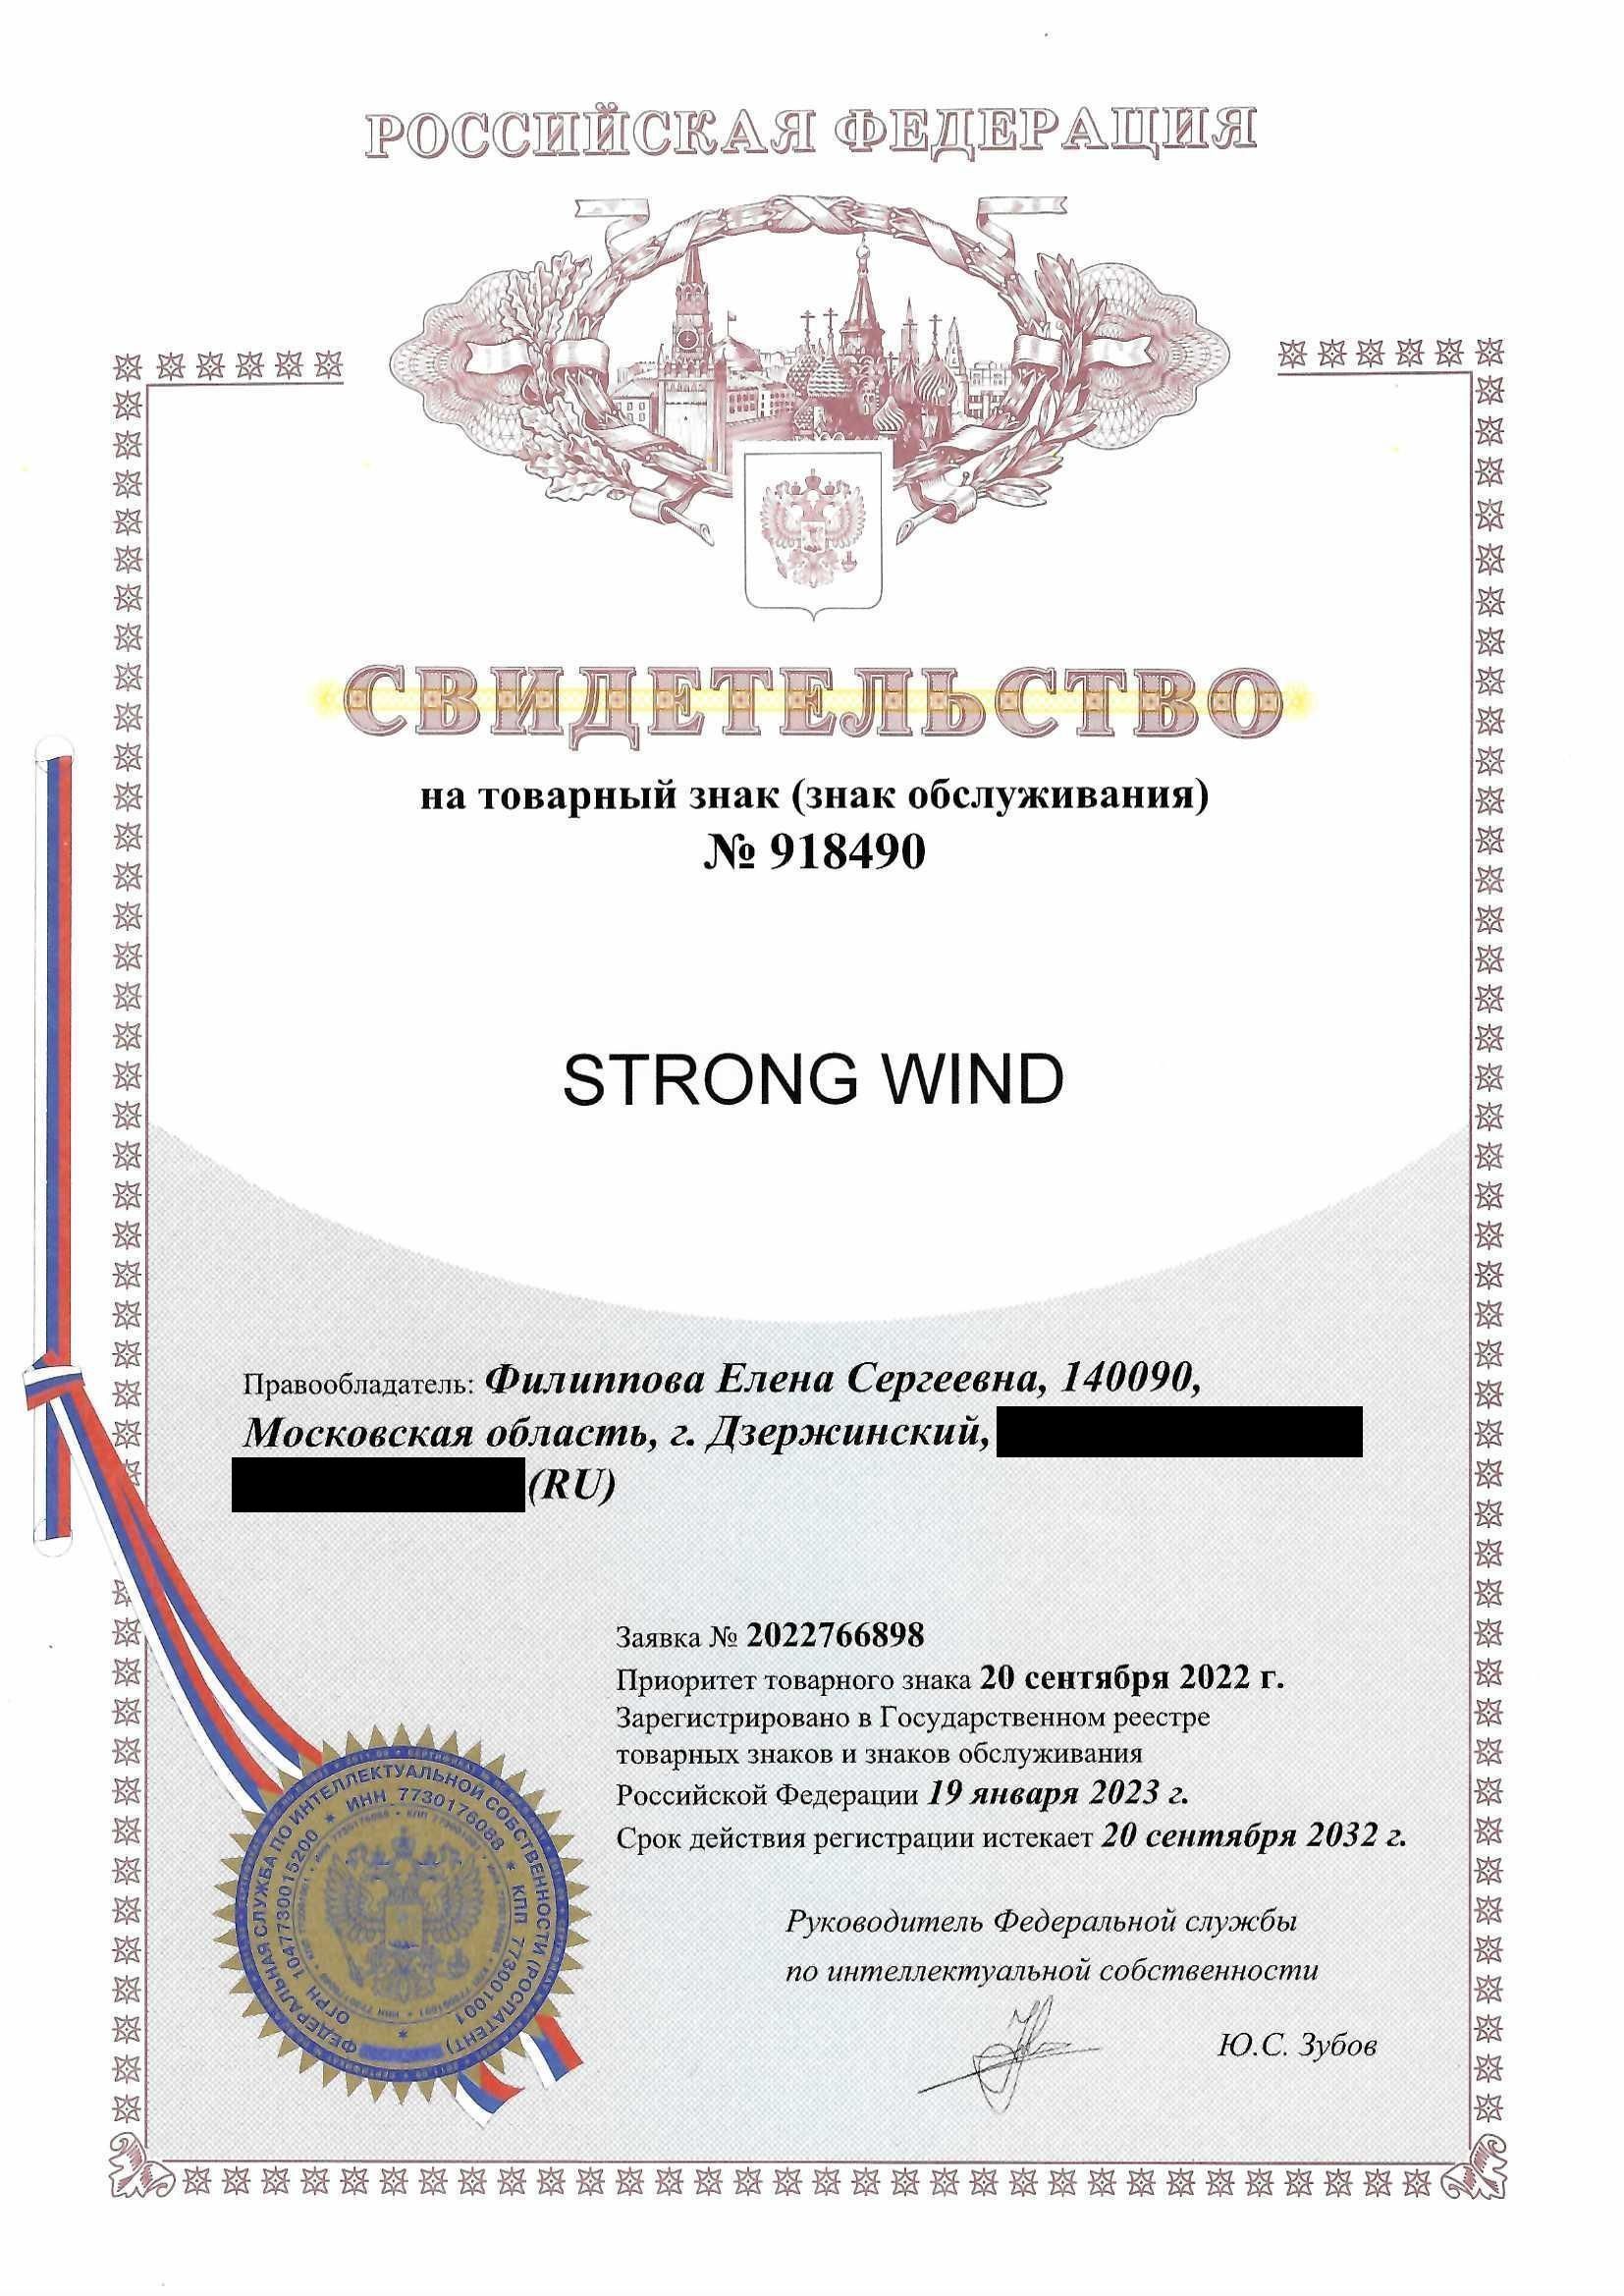 Товарный знак № 918490 – Strong Wind